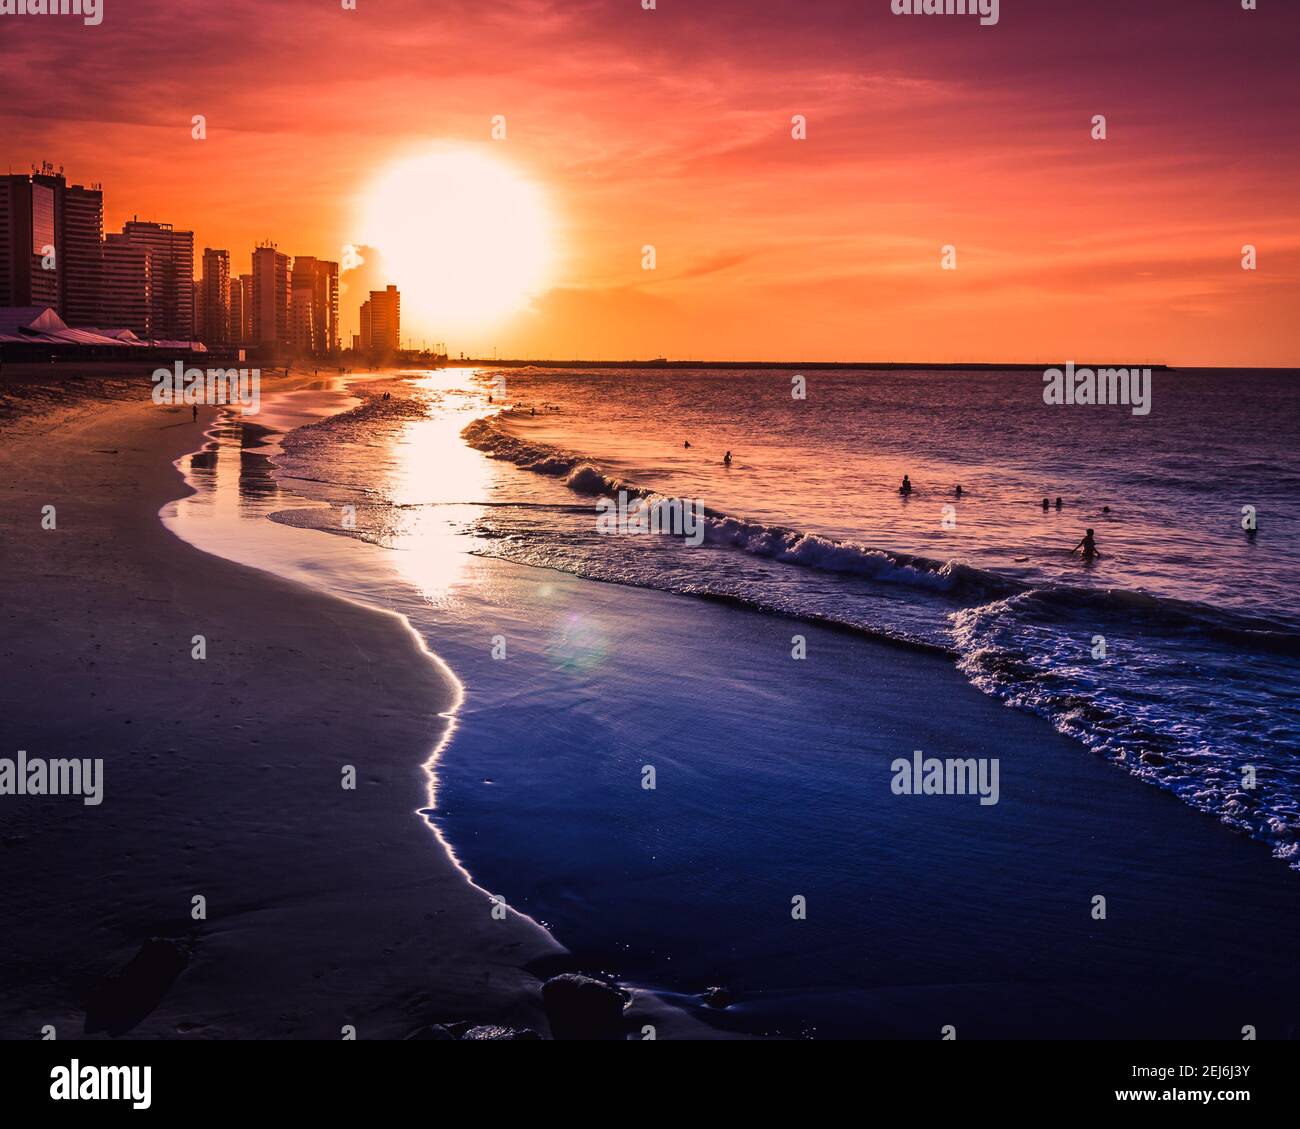 Una ardiente puesta de sol naranja en una playa tropical con algunos edificios y amantes de la playa bañándose en el mar cálido. Foto de stock